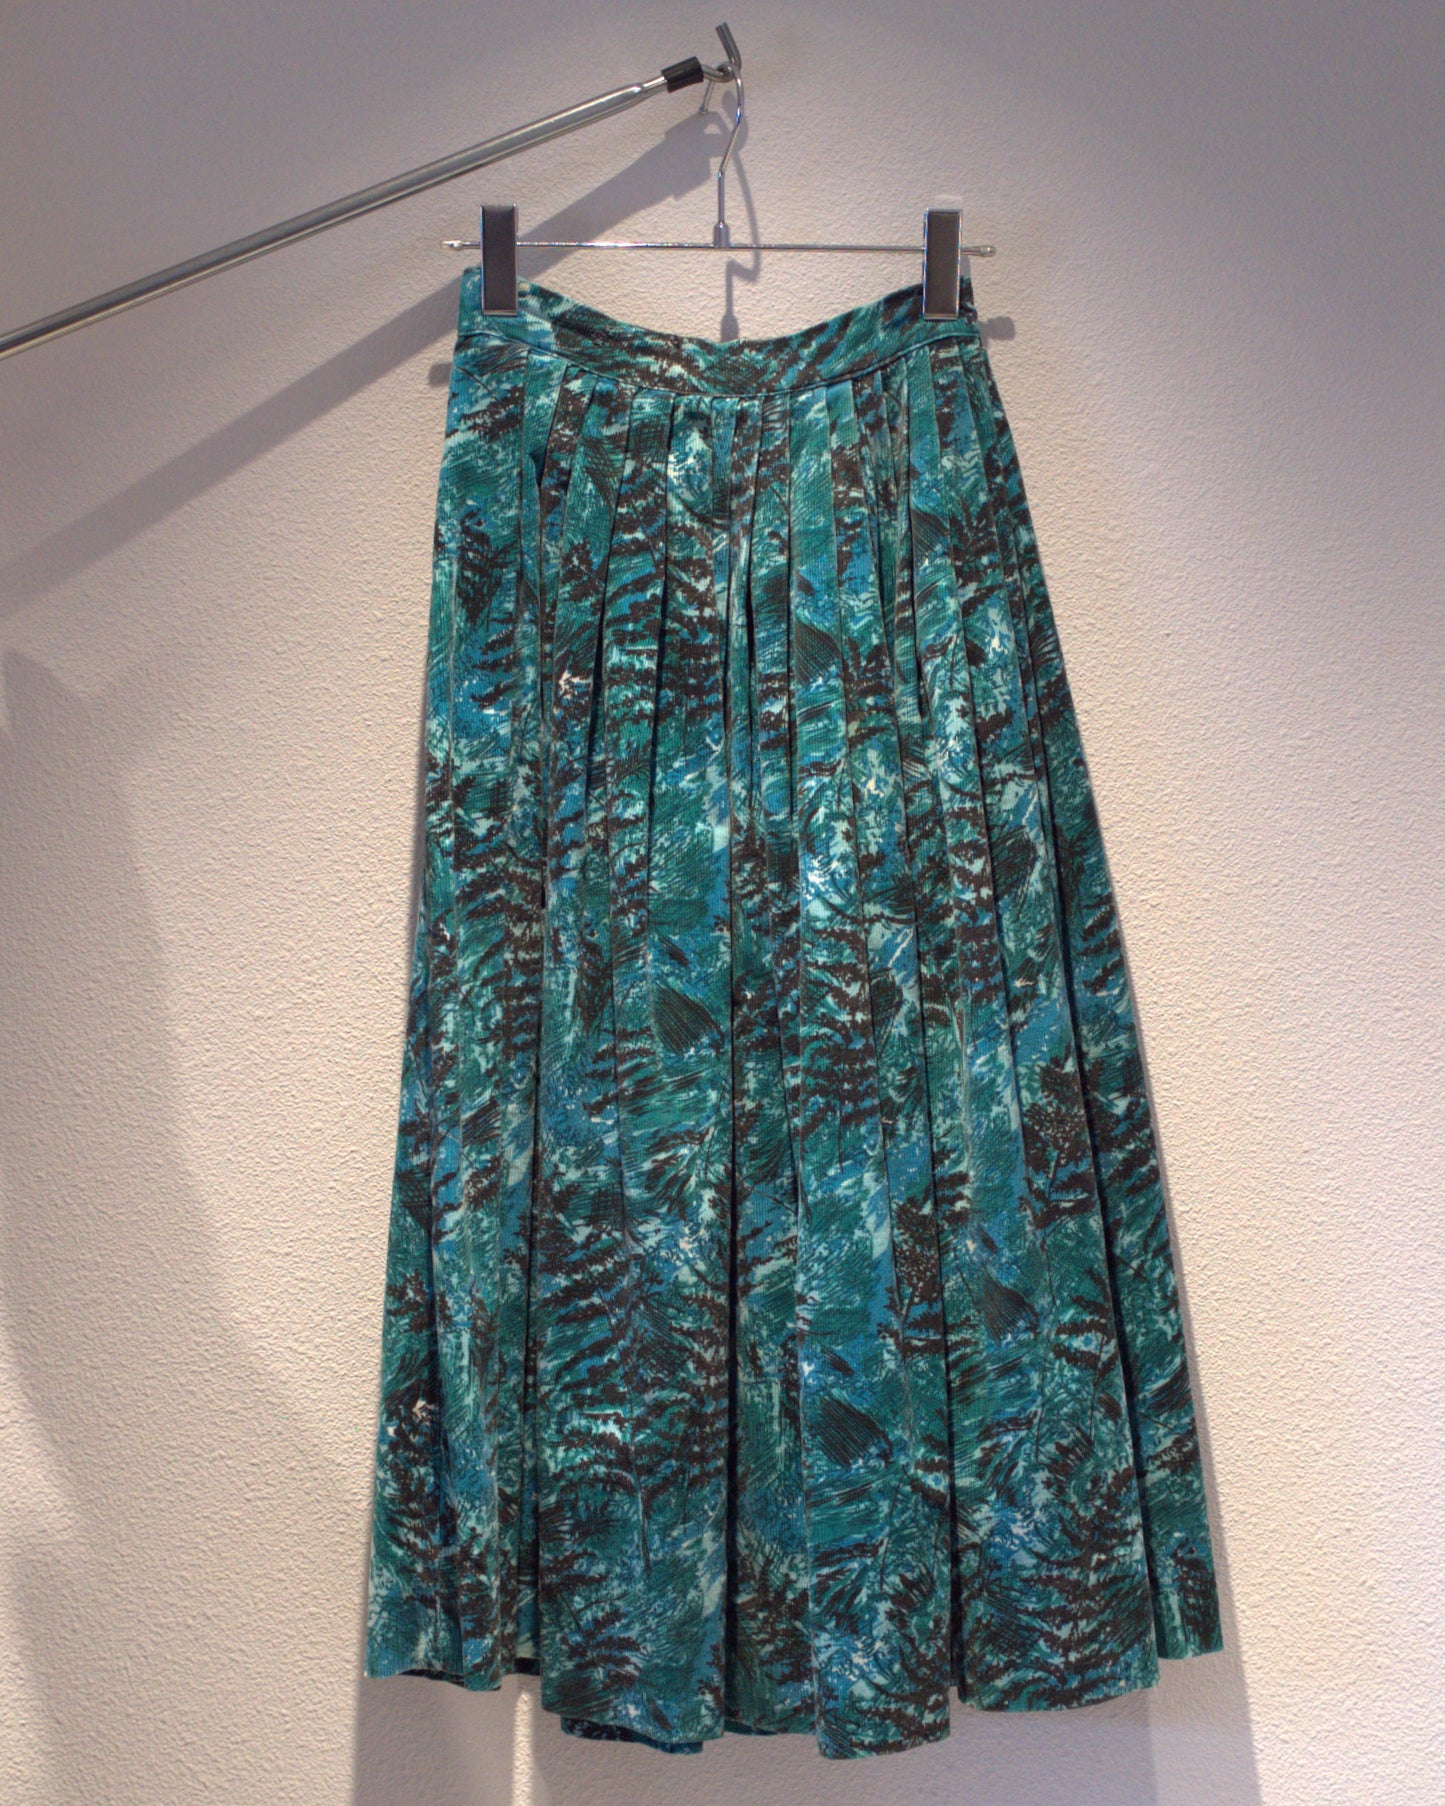 30's-50's Corduroy skirt with botanical print